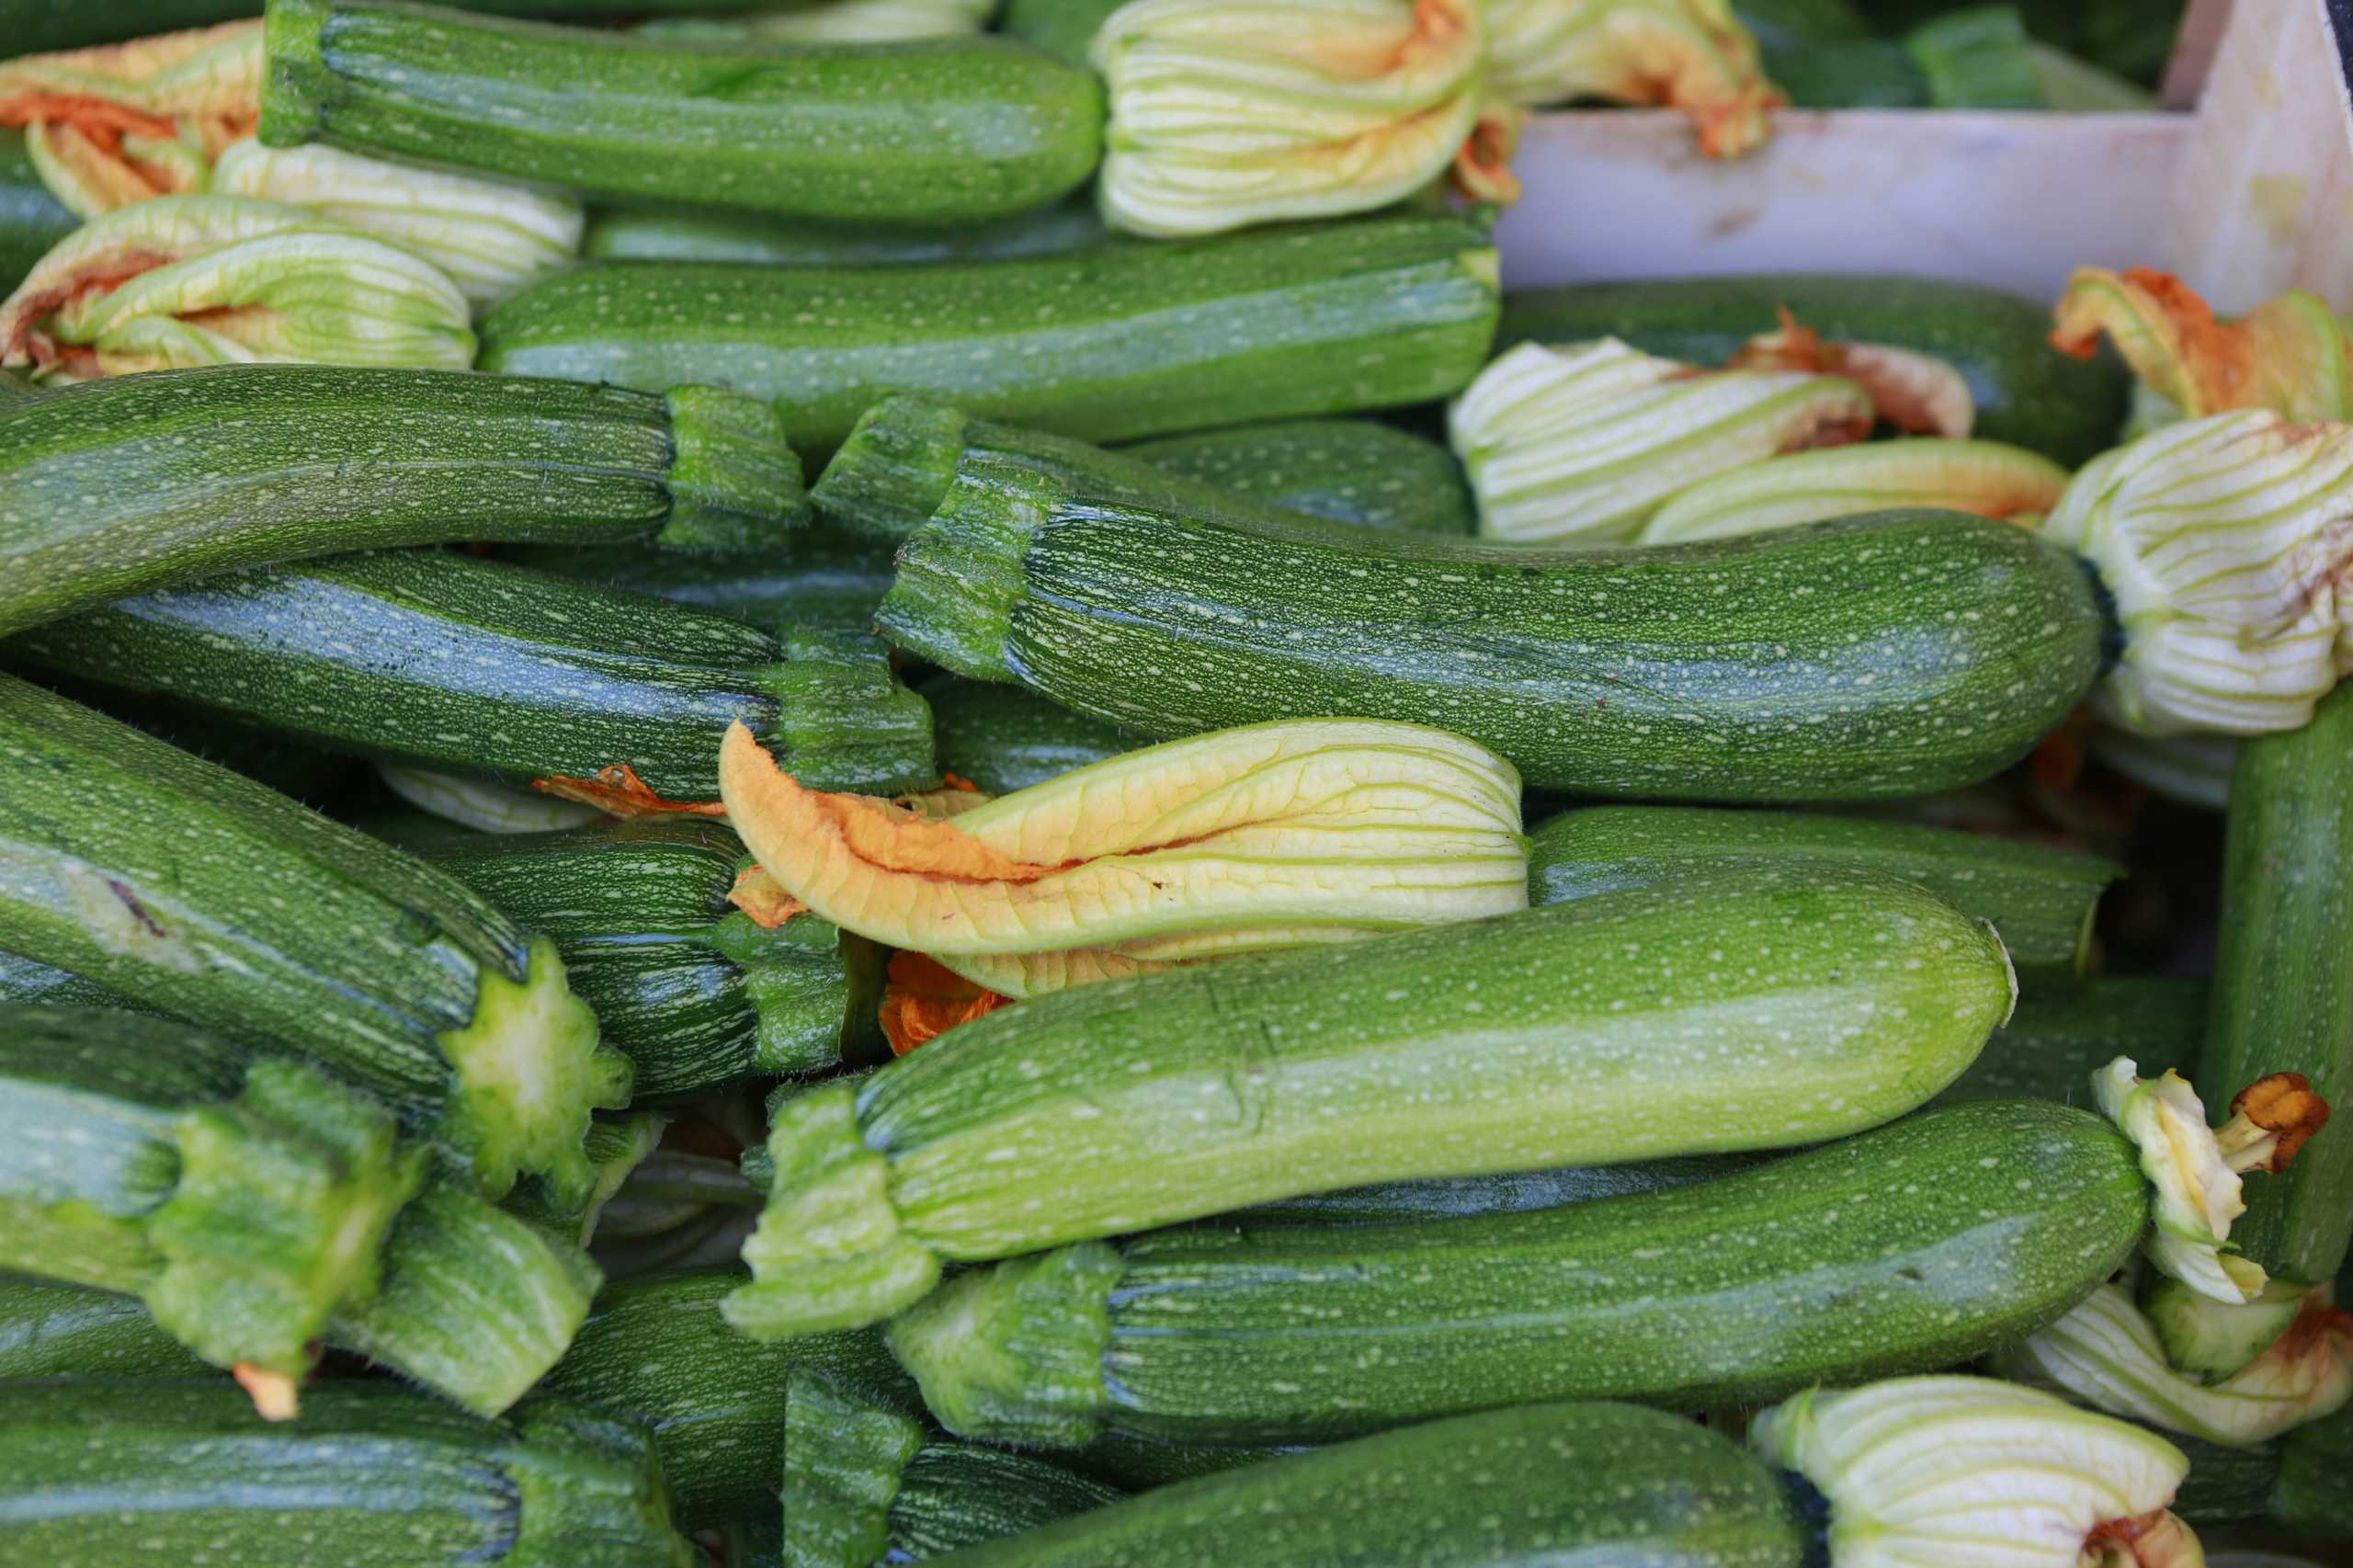 microsoft, ist zucchini gut für die gesundheit? eine bewertung durch ernährungsexperten